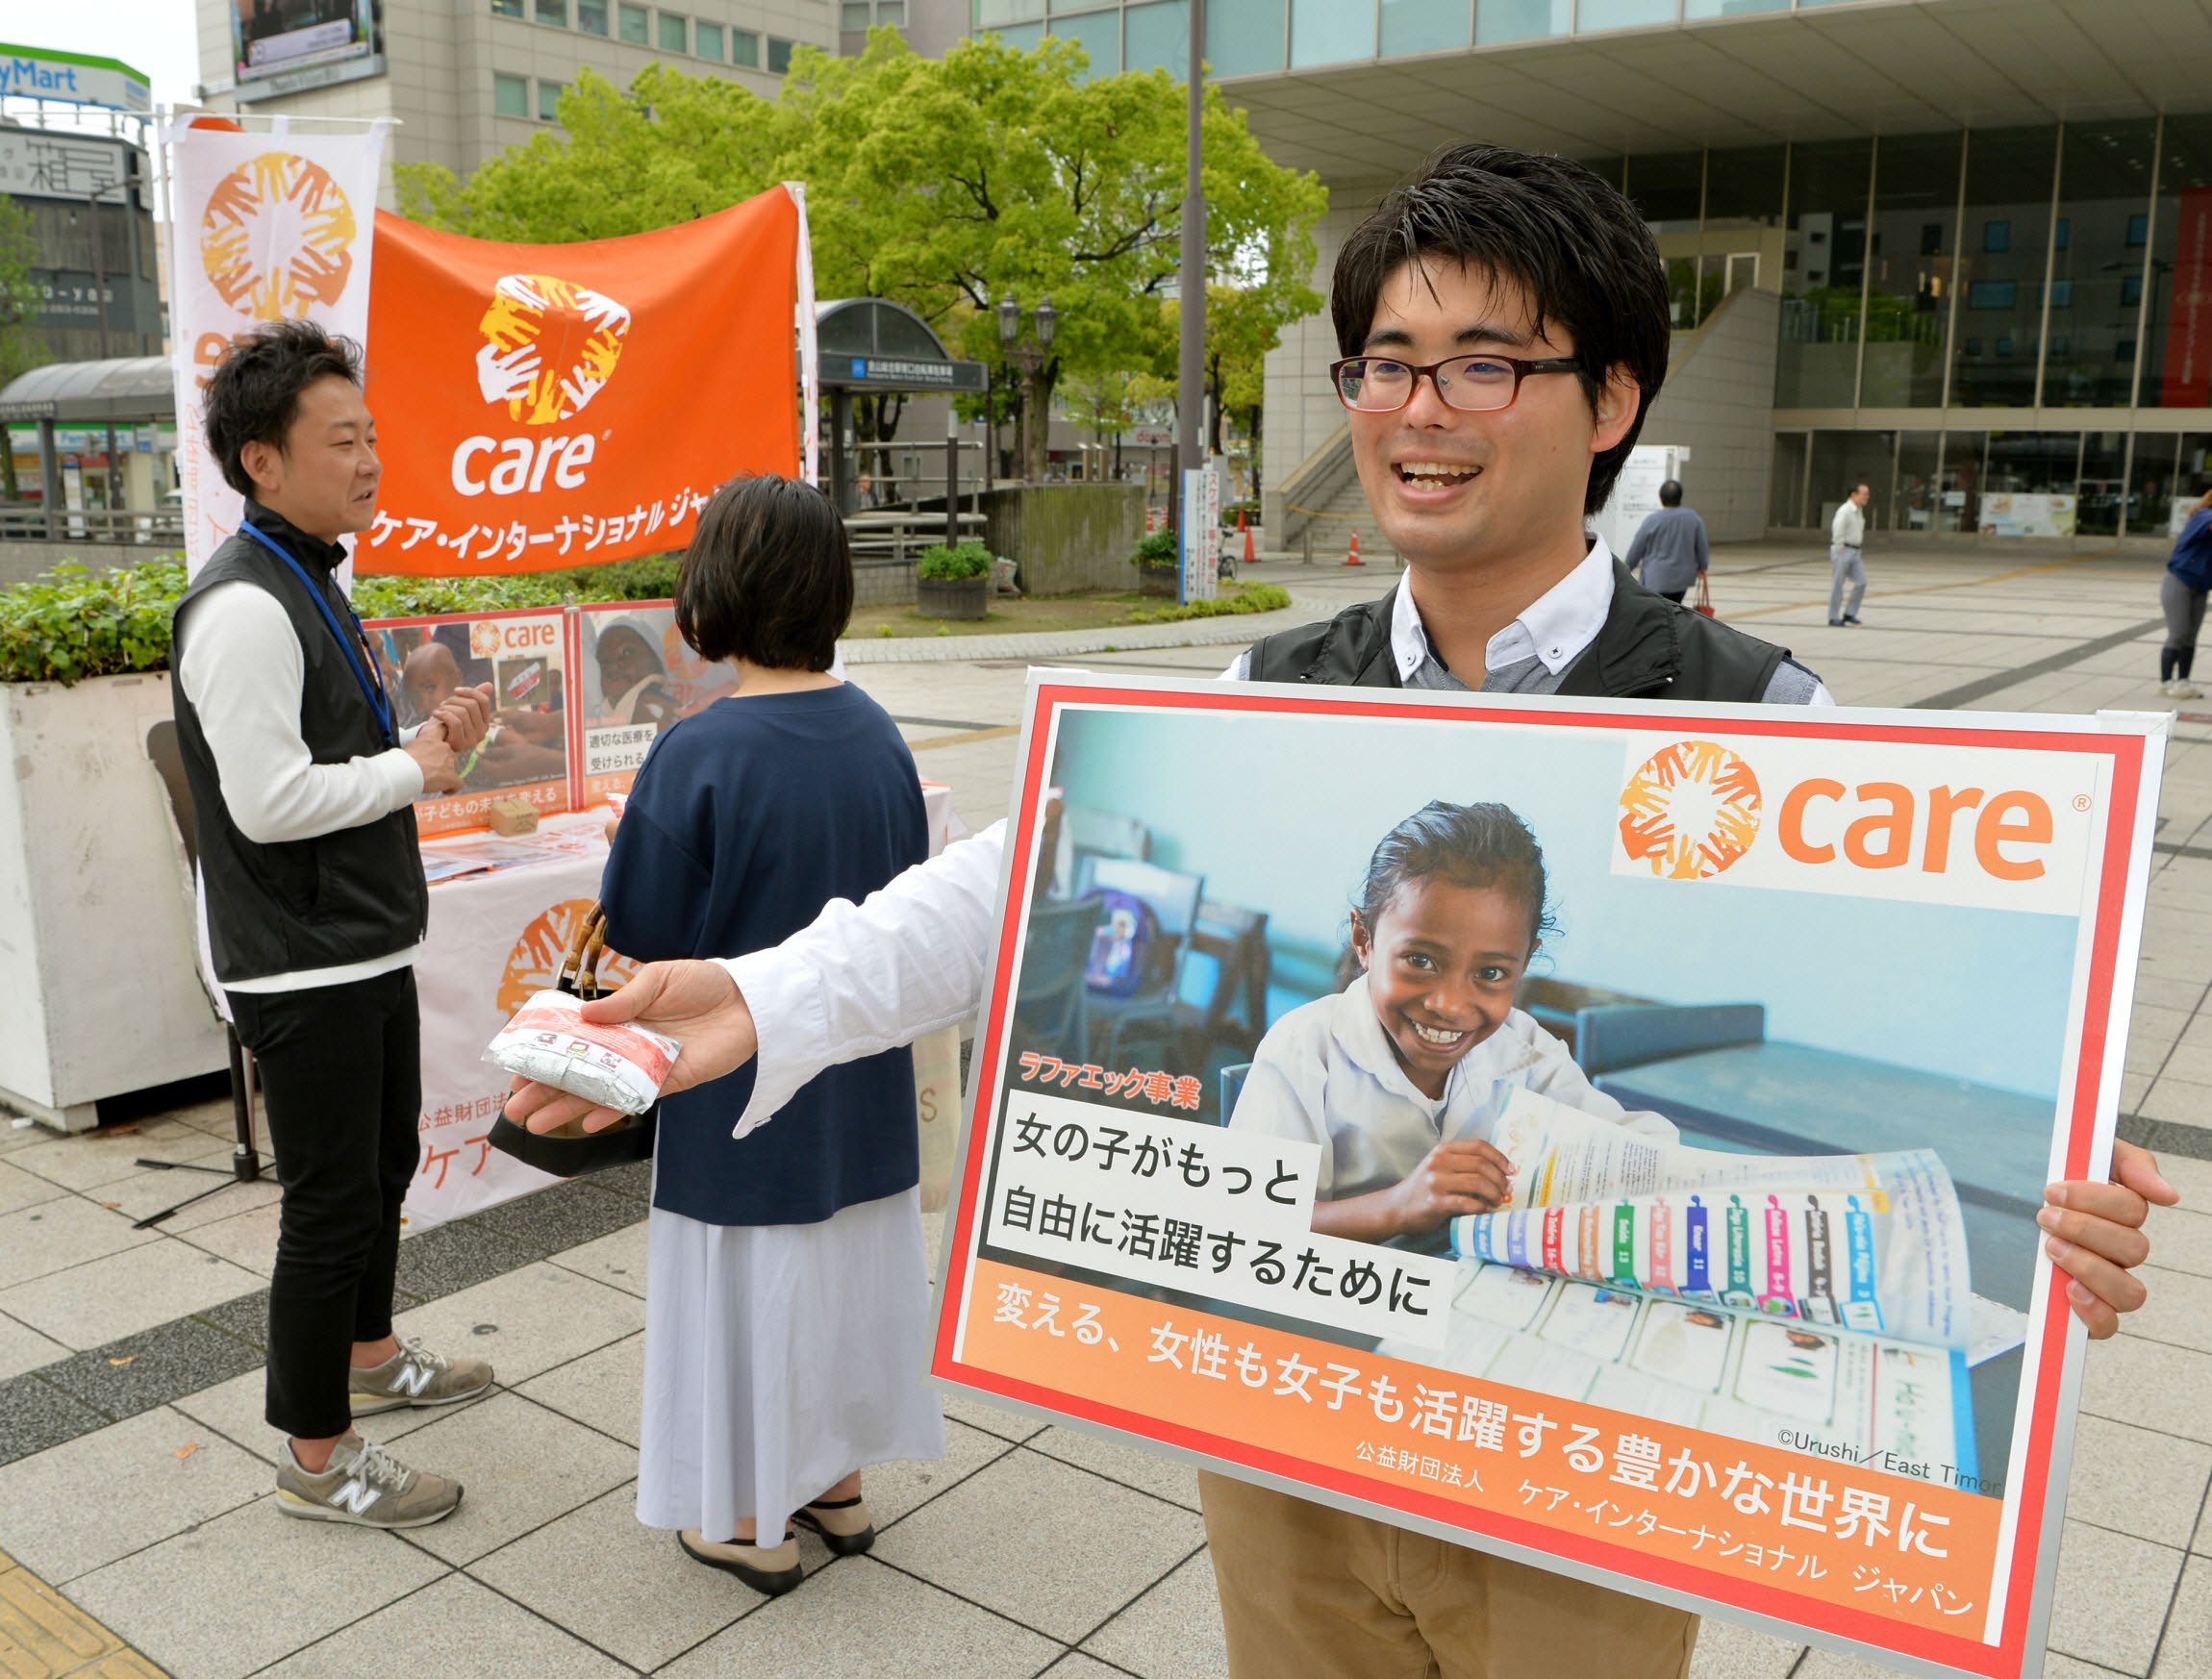 【5月開催】名古屋近郊で街頭キャンペーンを実施しています